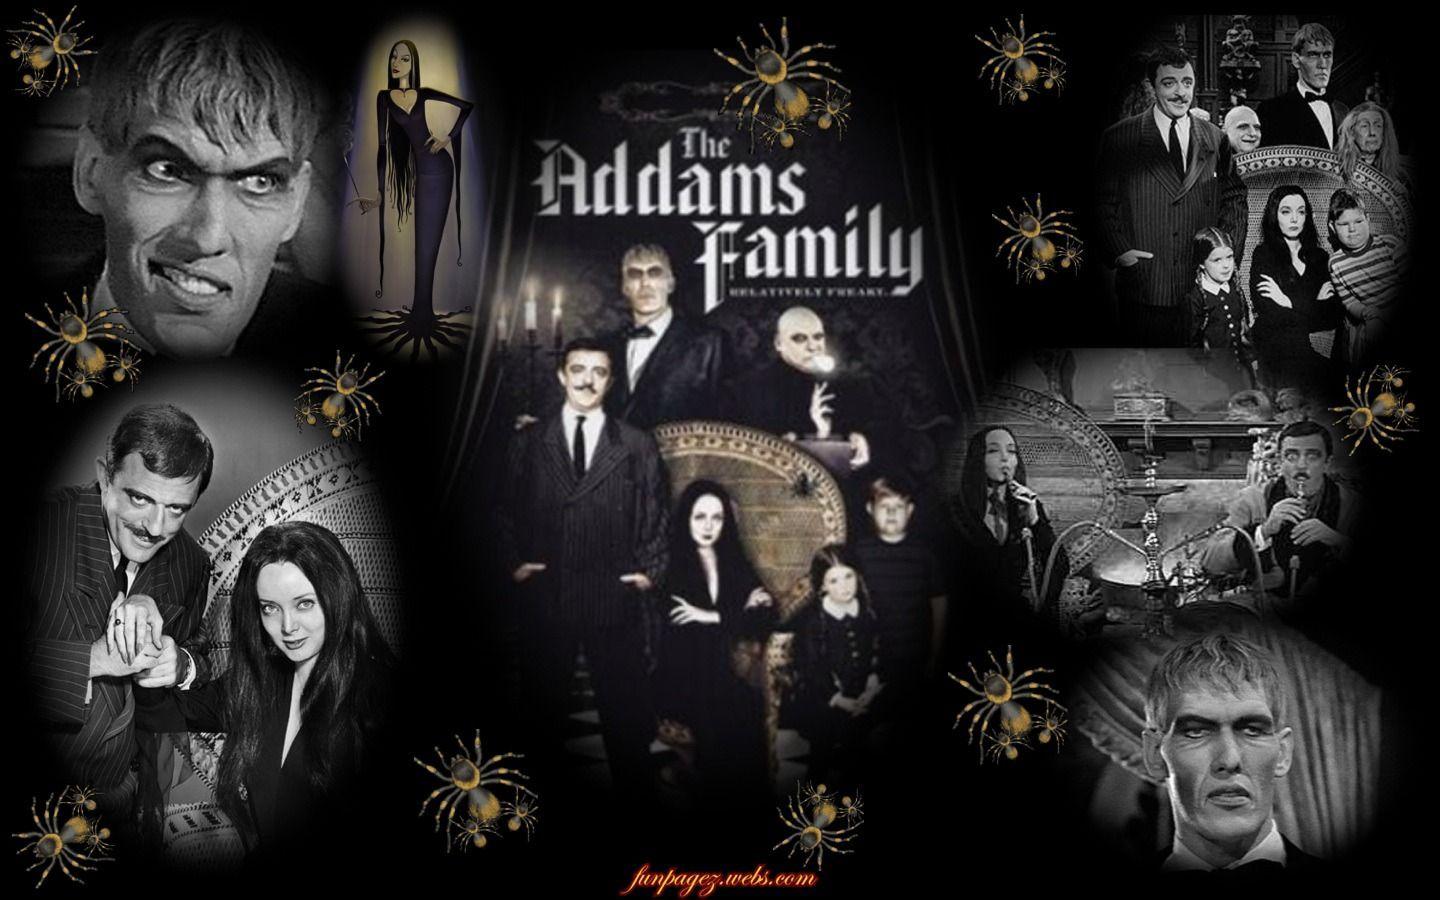 The Addams Family Wallpaper. Addams Family Wallpaper, Addams Family Broadway Wallpaper and Wallpaper Coffin Addams Carmorticia